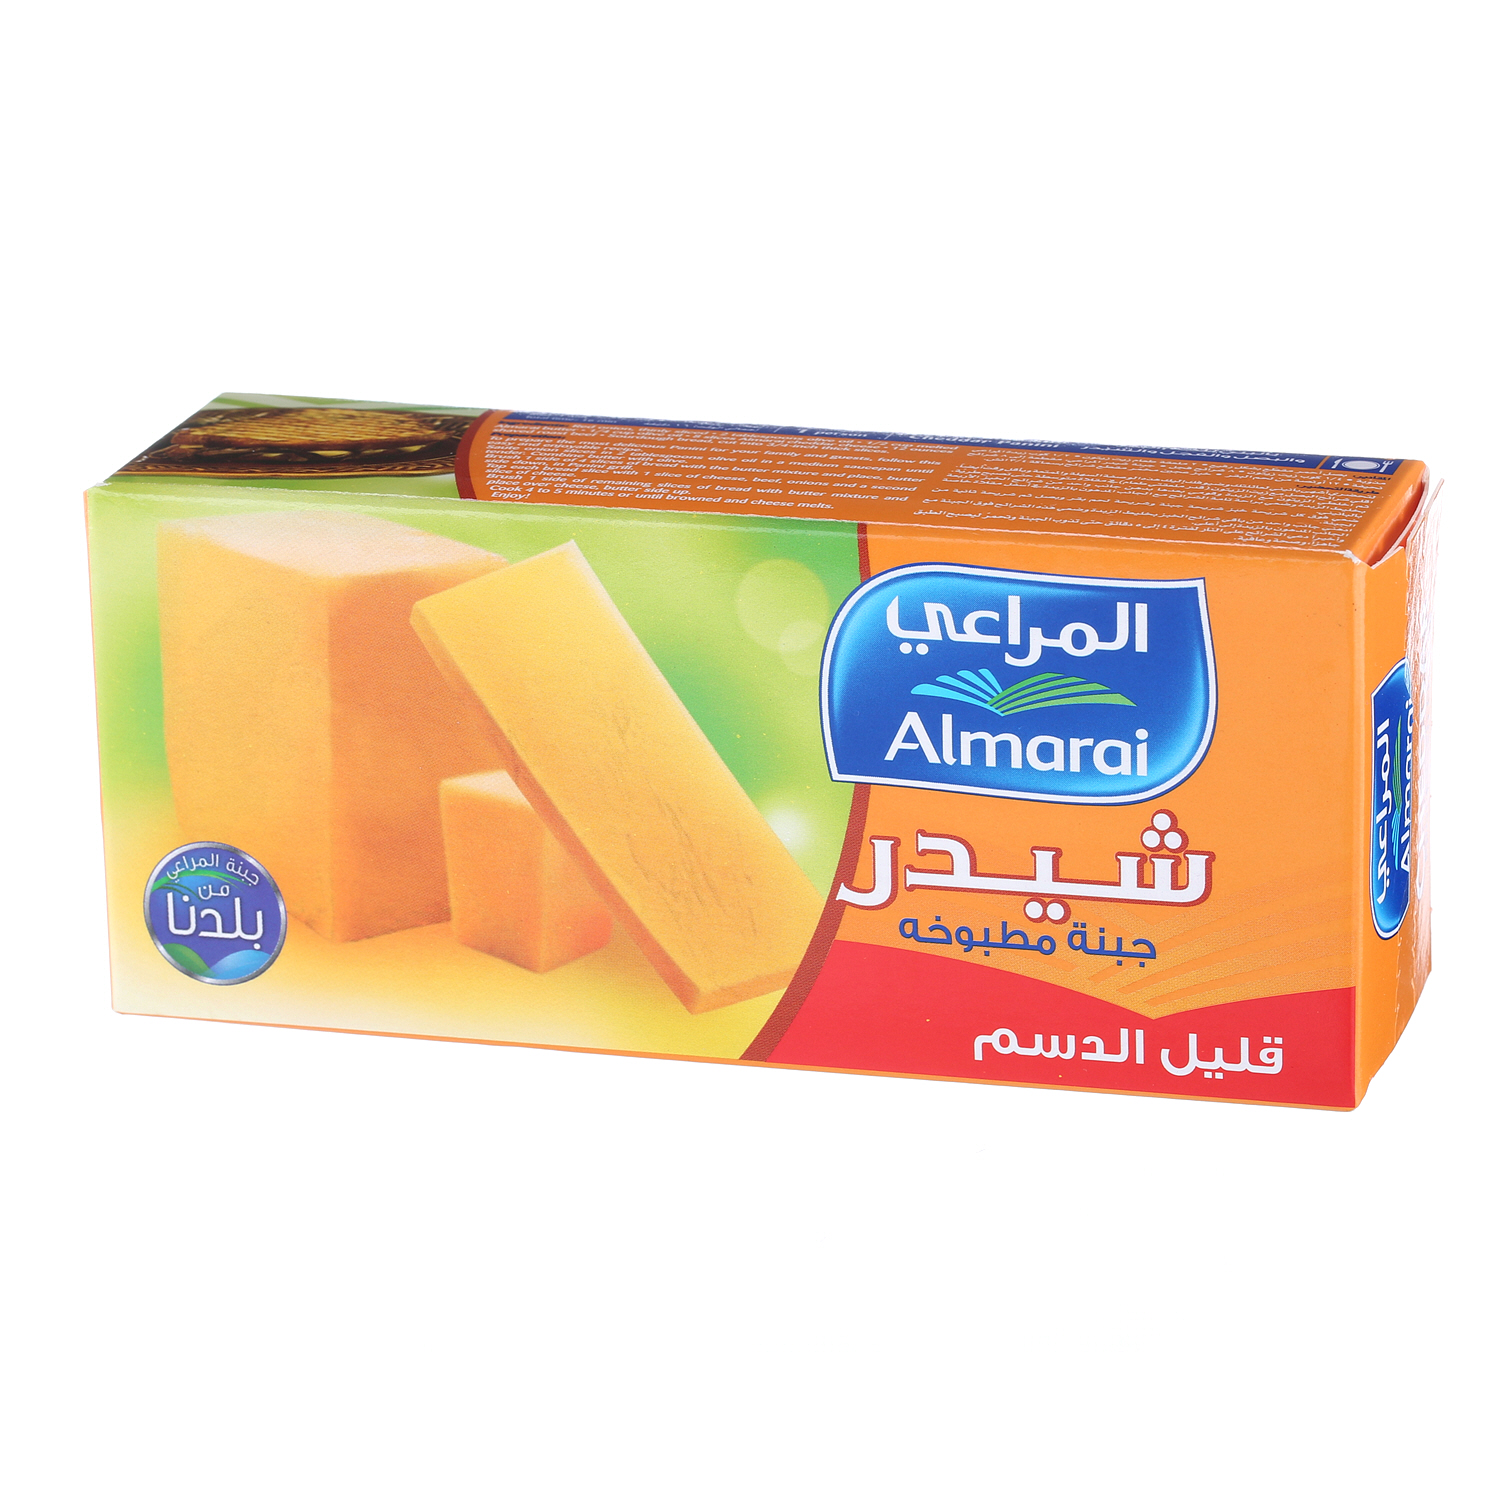 Al Marai Cheddar Cheese Low Fat 454 g